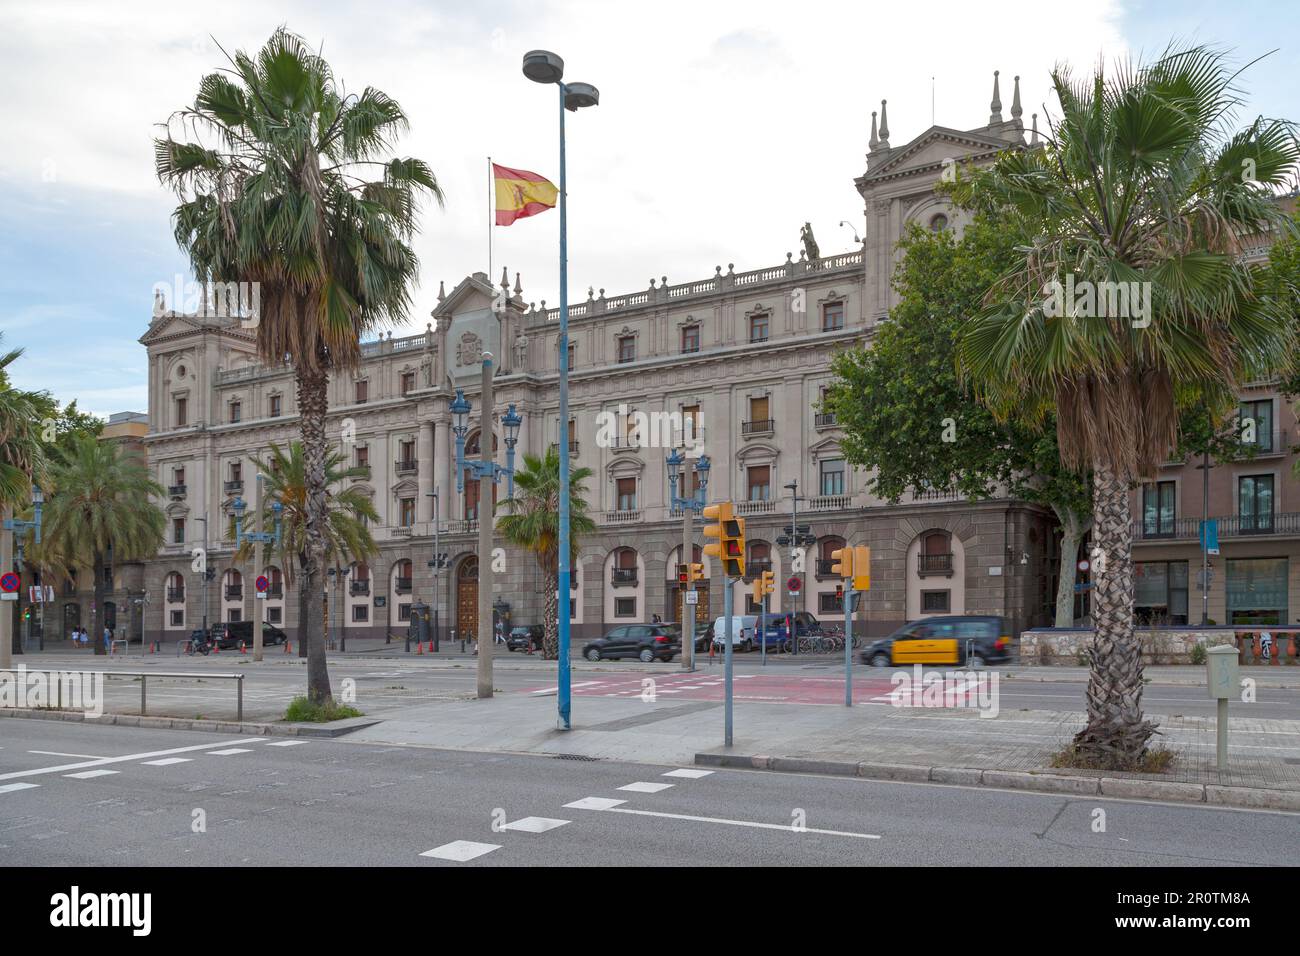 Barcelone, Espagne - 08 juin 2018 : façade du bâtiment du général Captaincy sur le Paseo de Colón en face de Port Vell. Banque D'Images